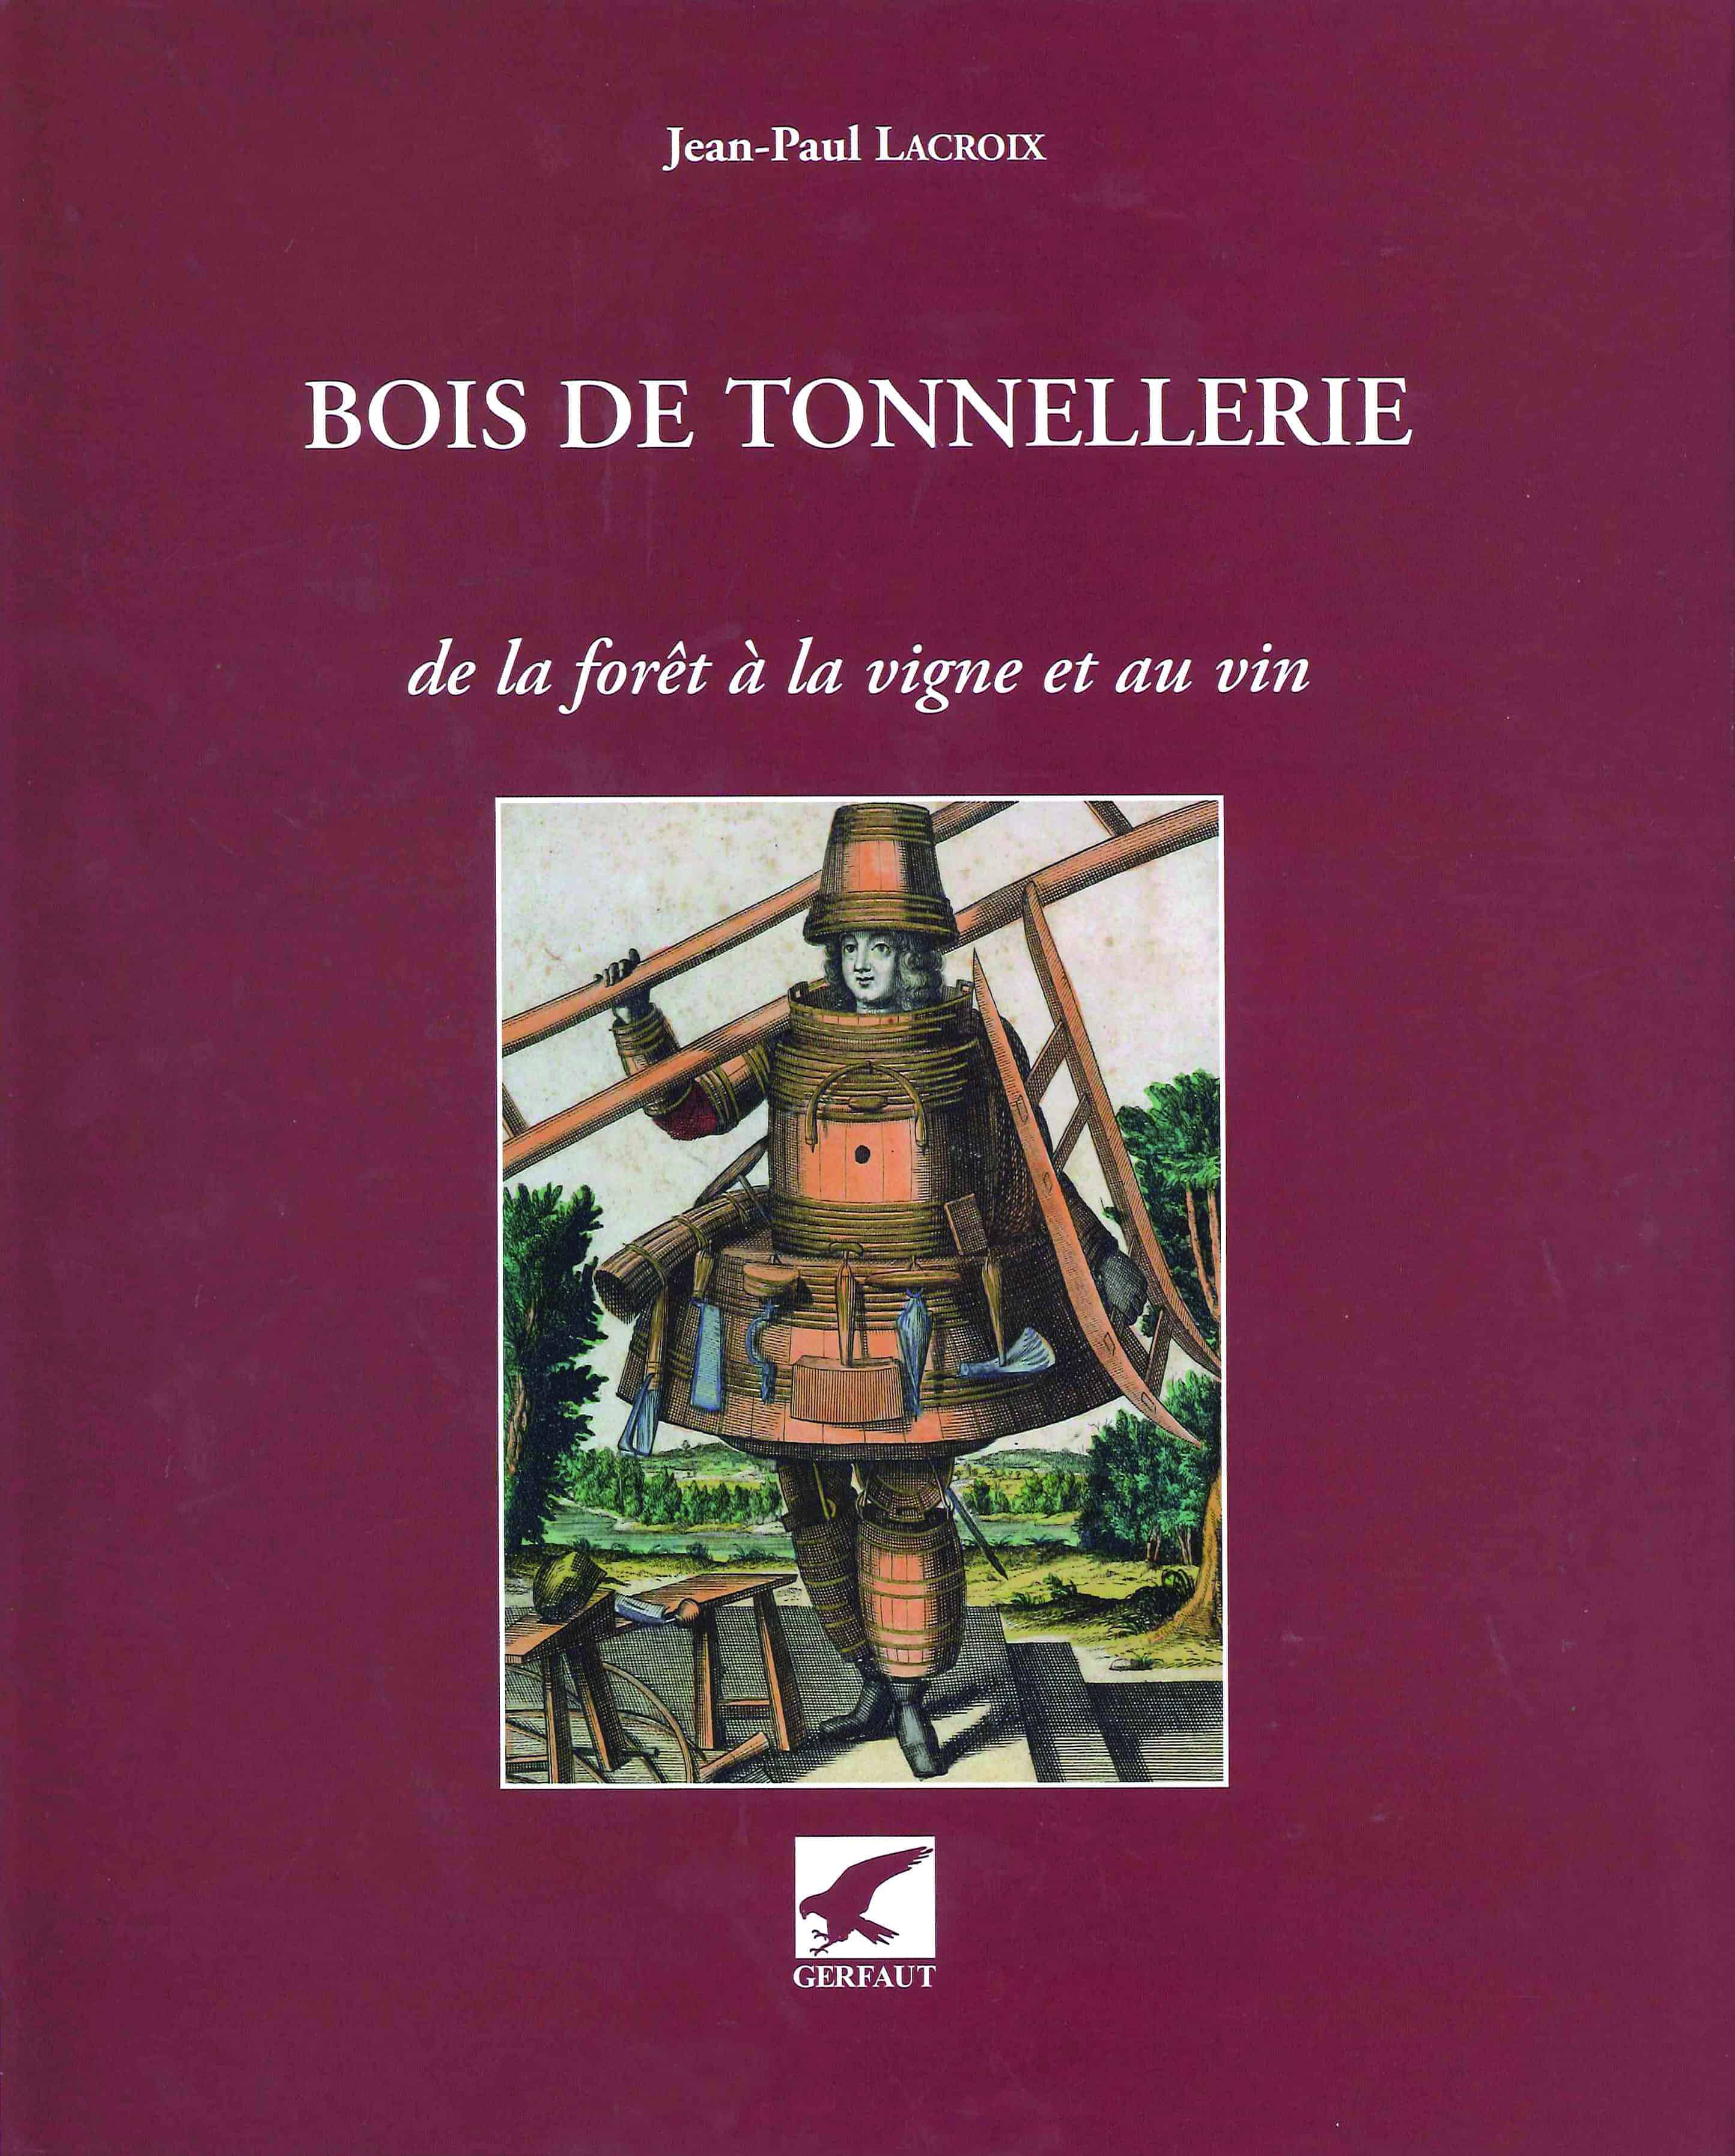 Bois de tonnellerie de Jean-Paul Lacroix - Editions du Gerfaut